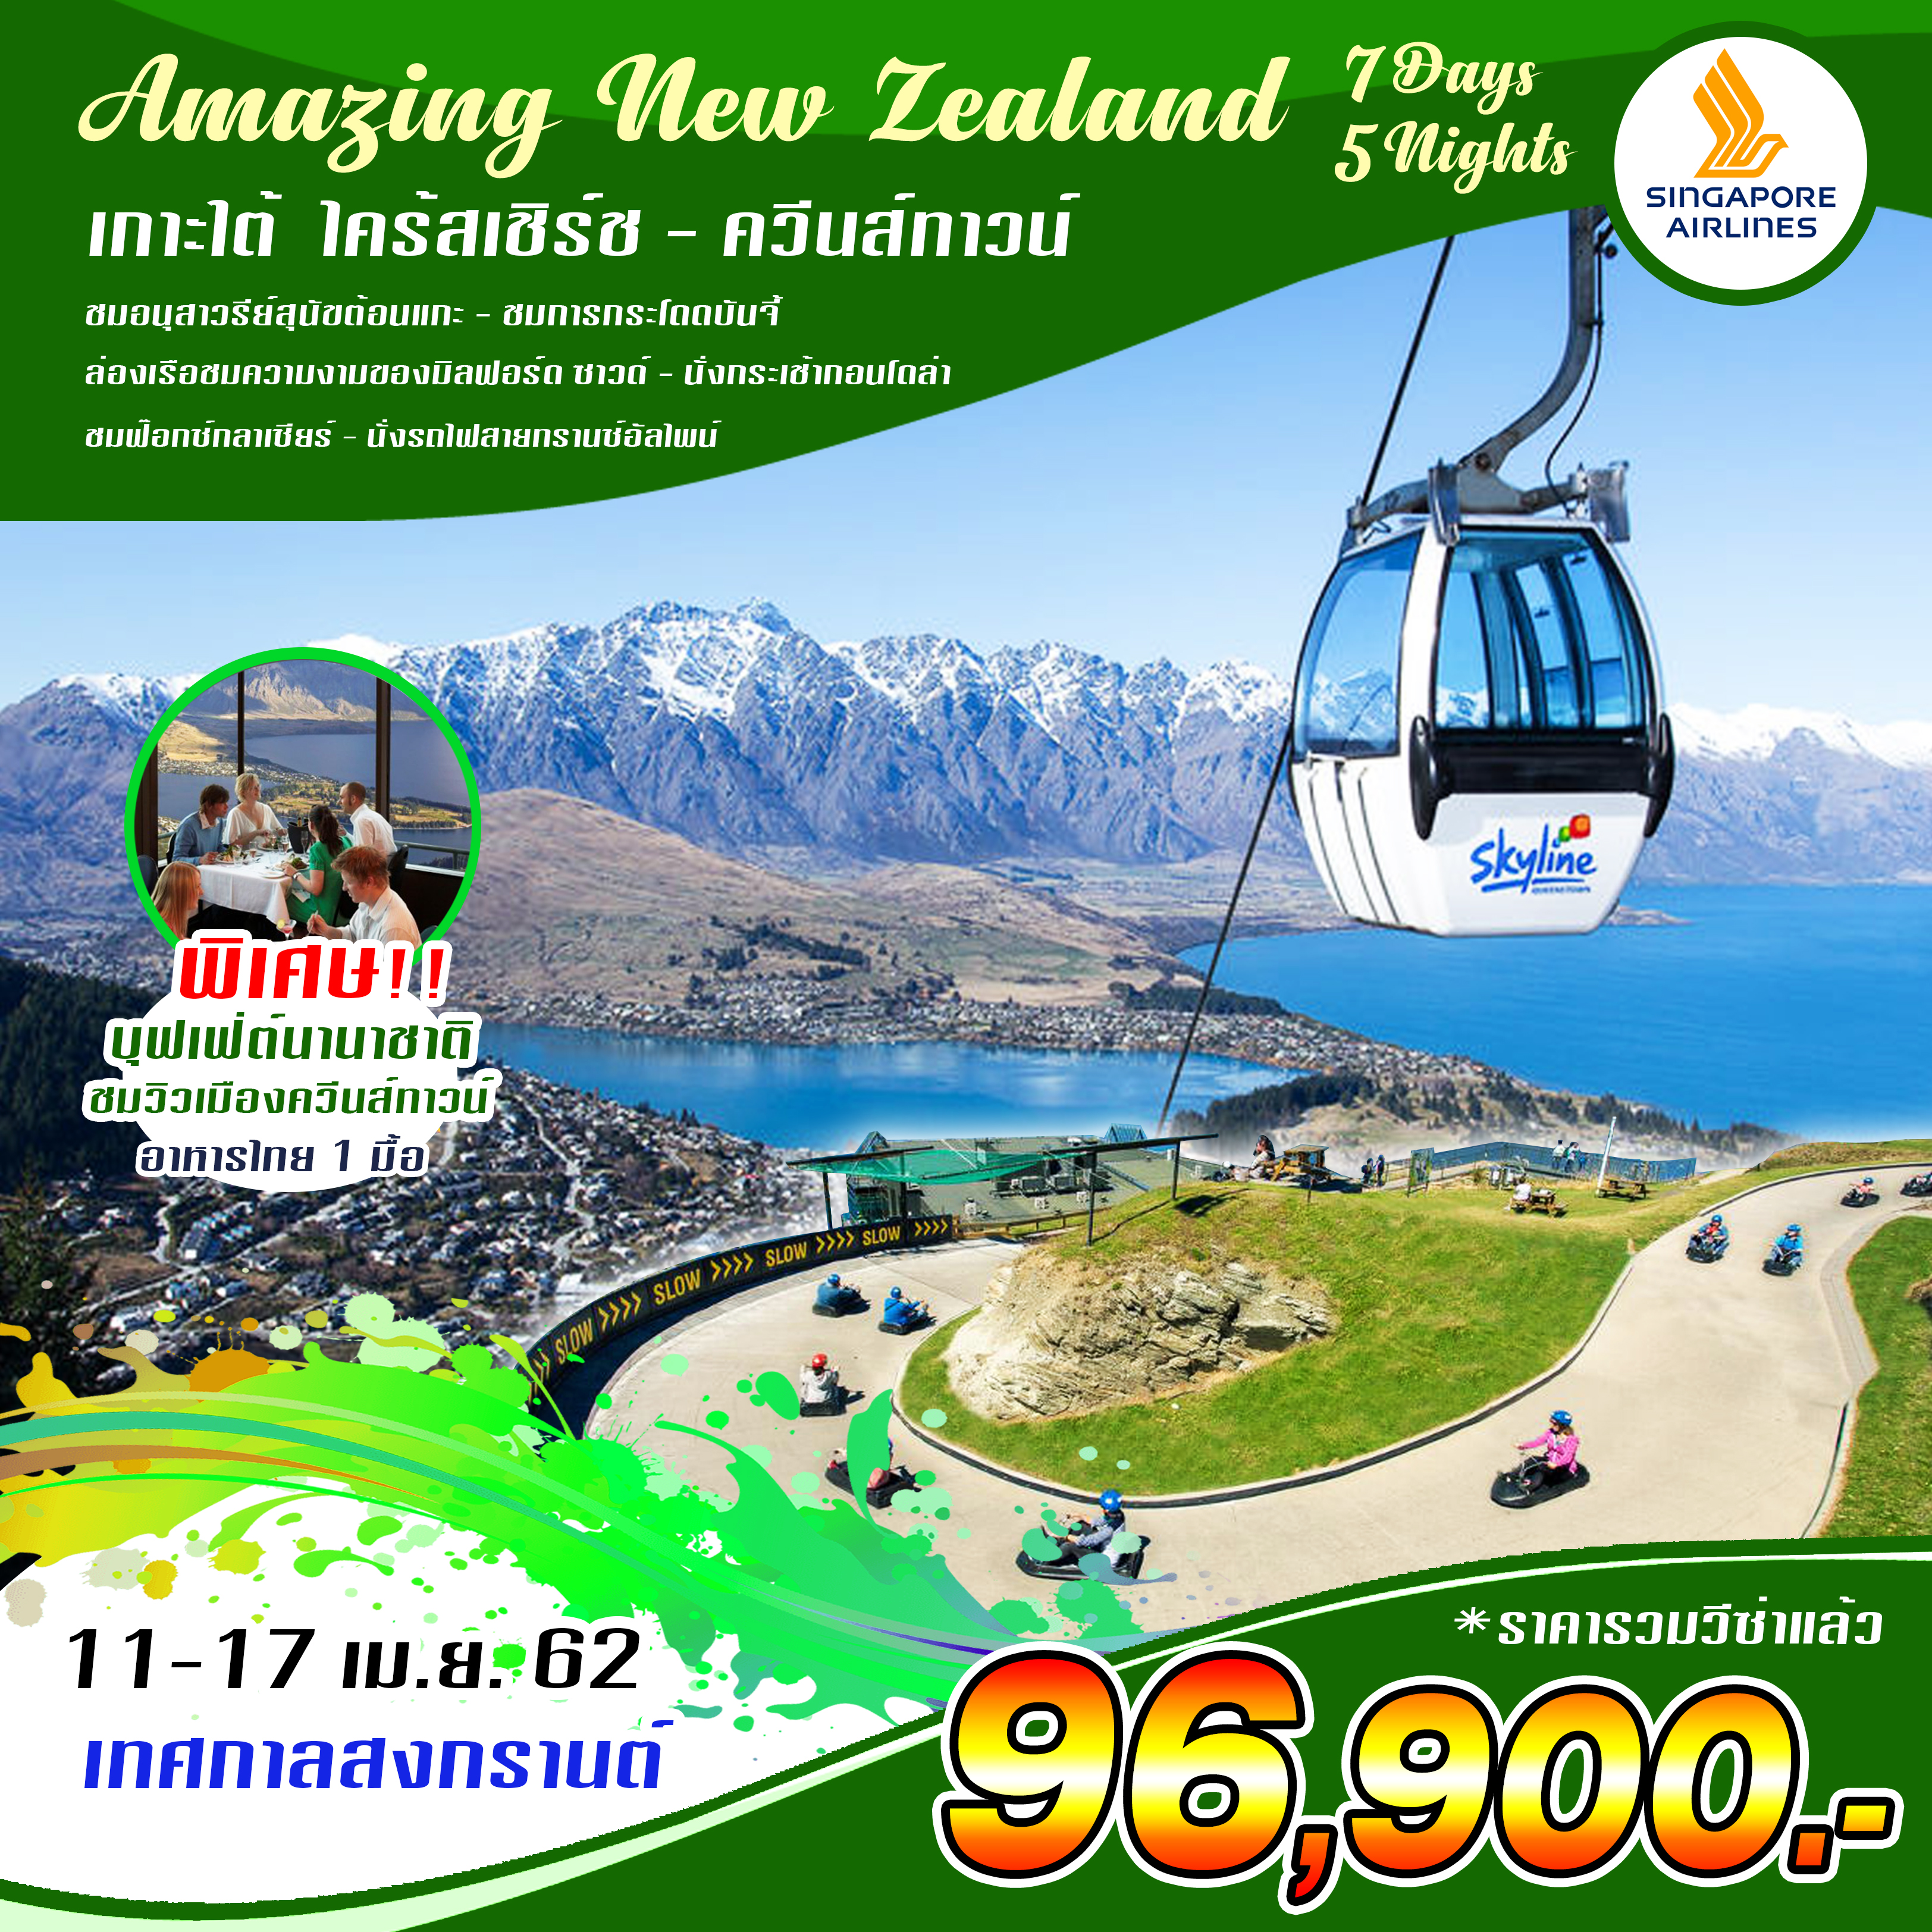 ทัวร์นิวซีแลนด์ Amazing New Zealand Tour 7วัน 5คืน  (11-17 APR'19)